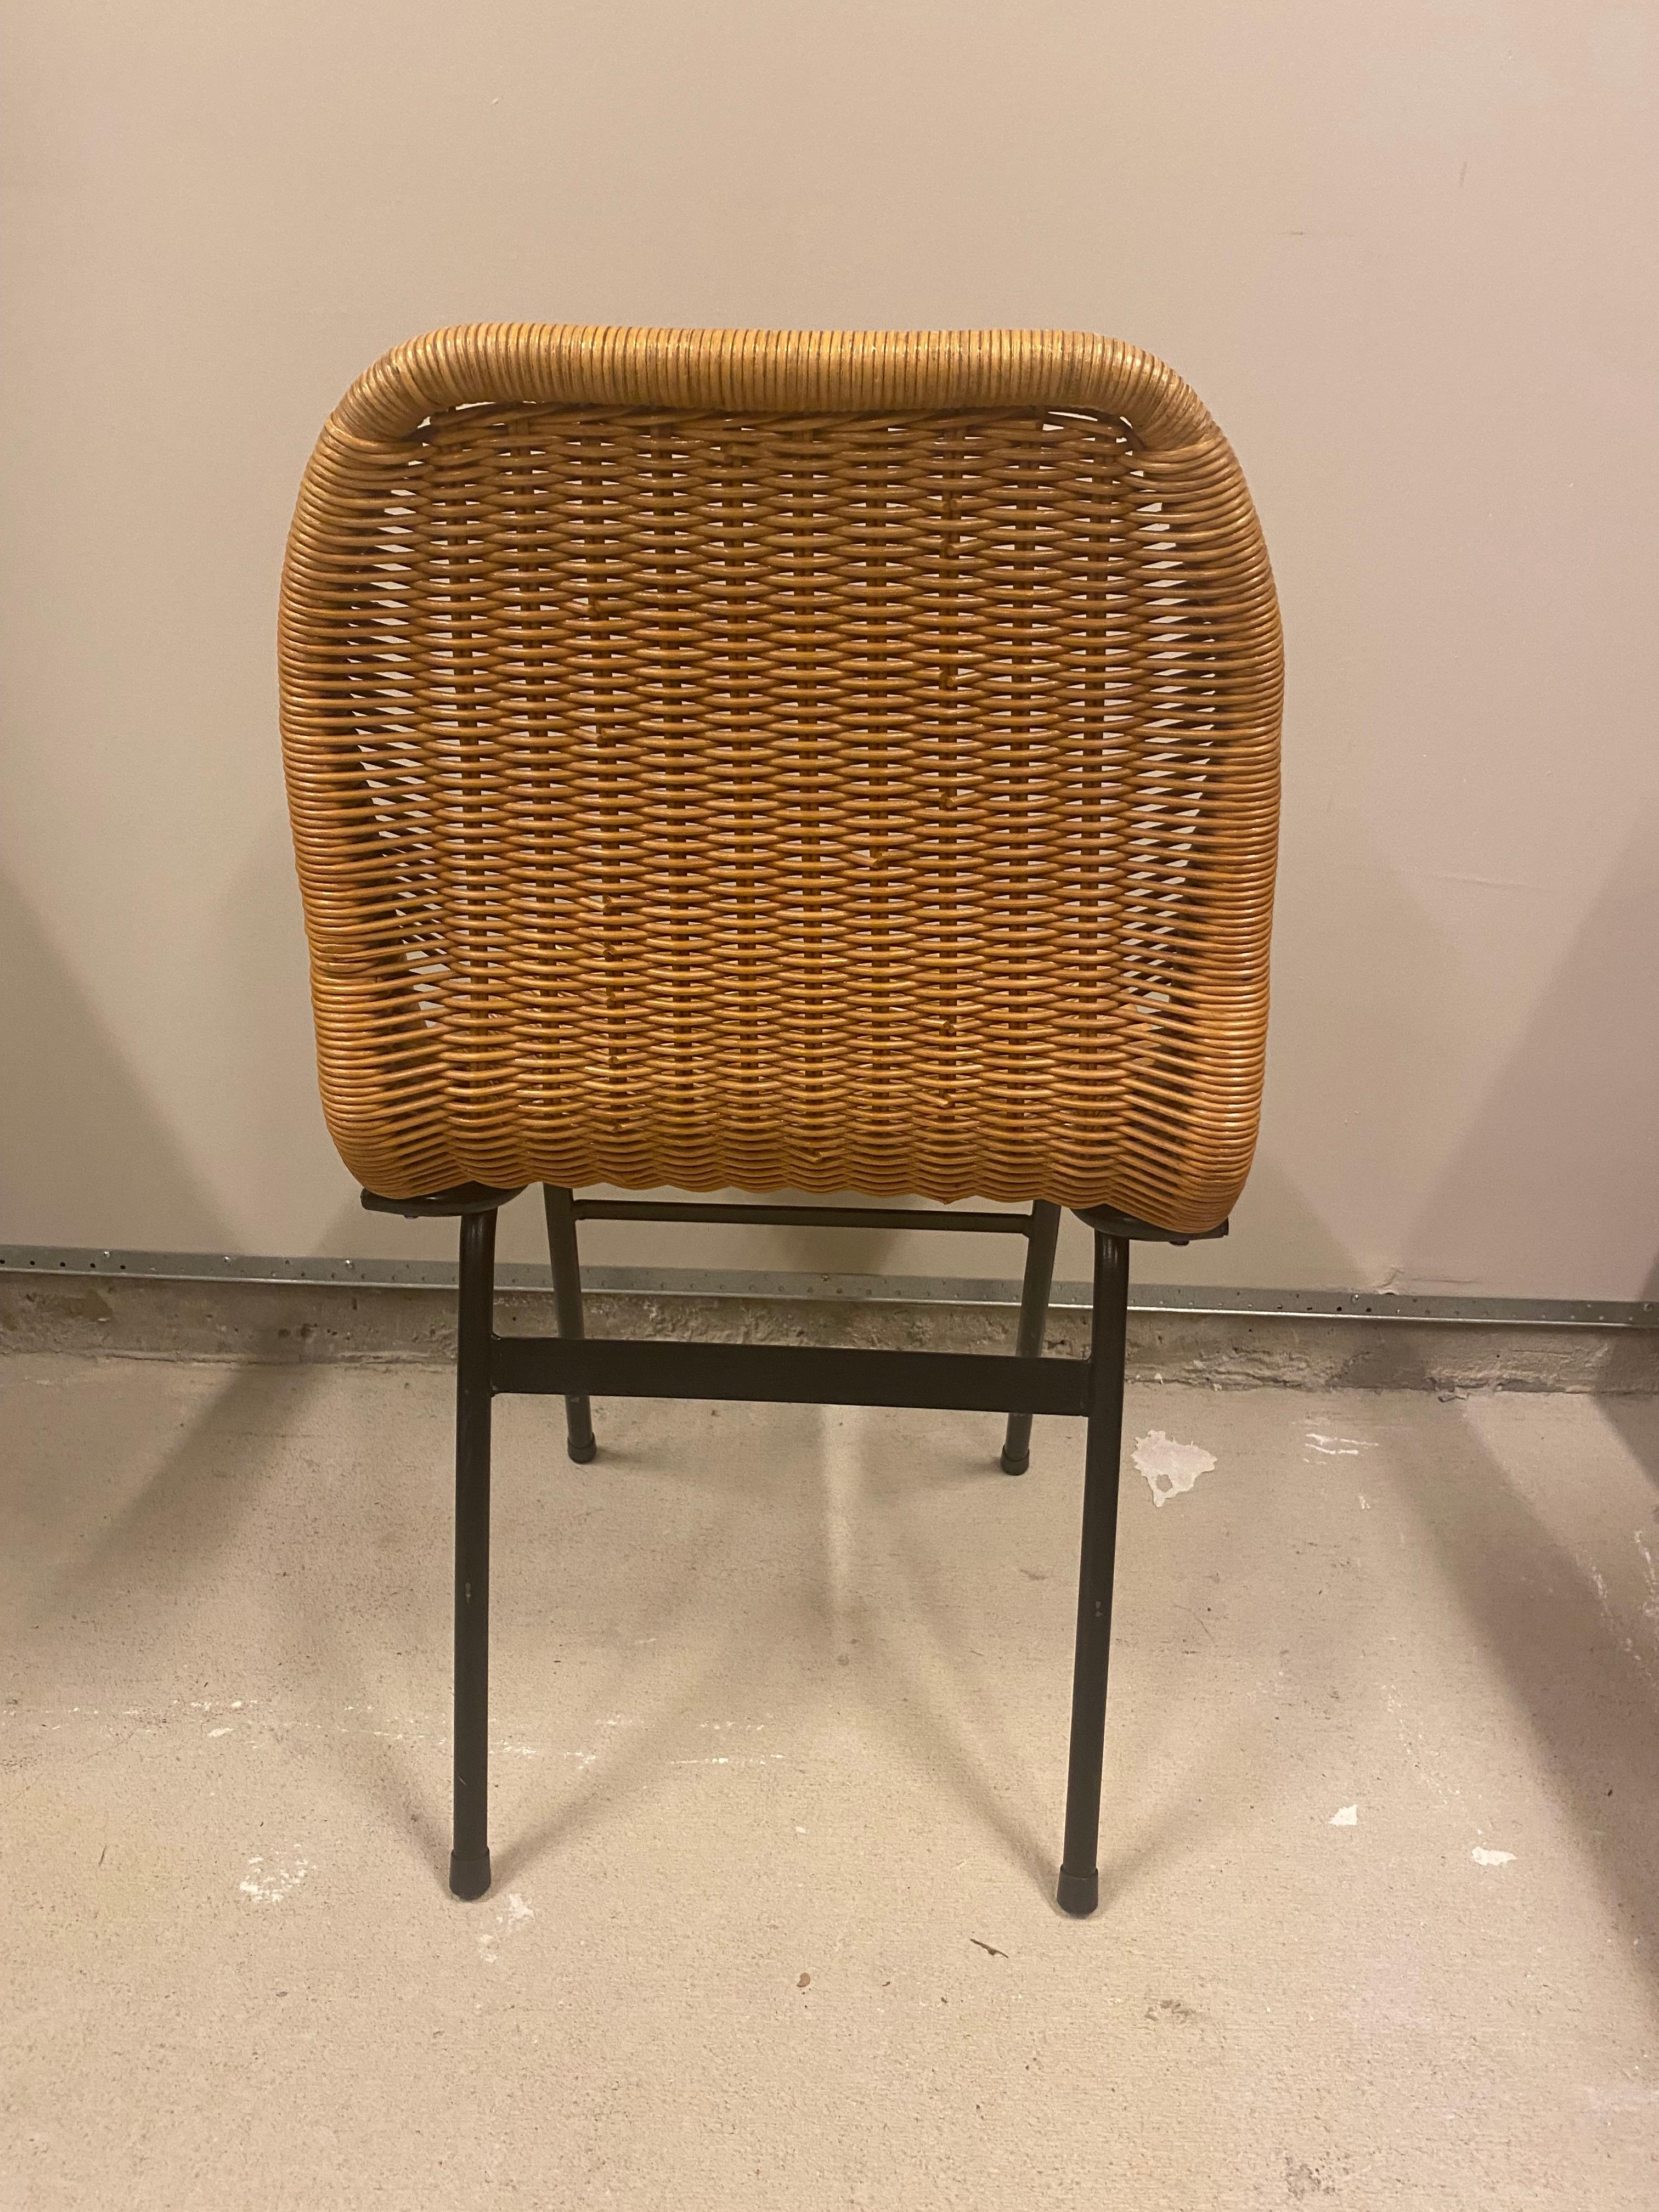 Steel Set of 4 Rattan or Wicker Chairs, Dirk van Sliedregt, NL, 1960's